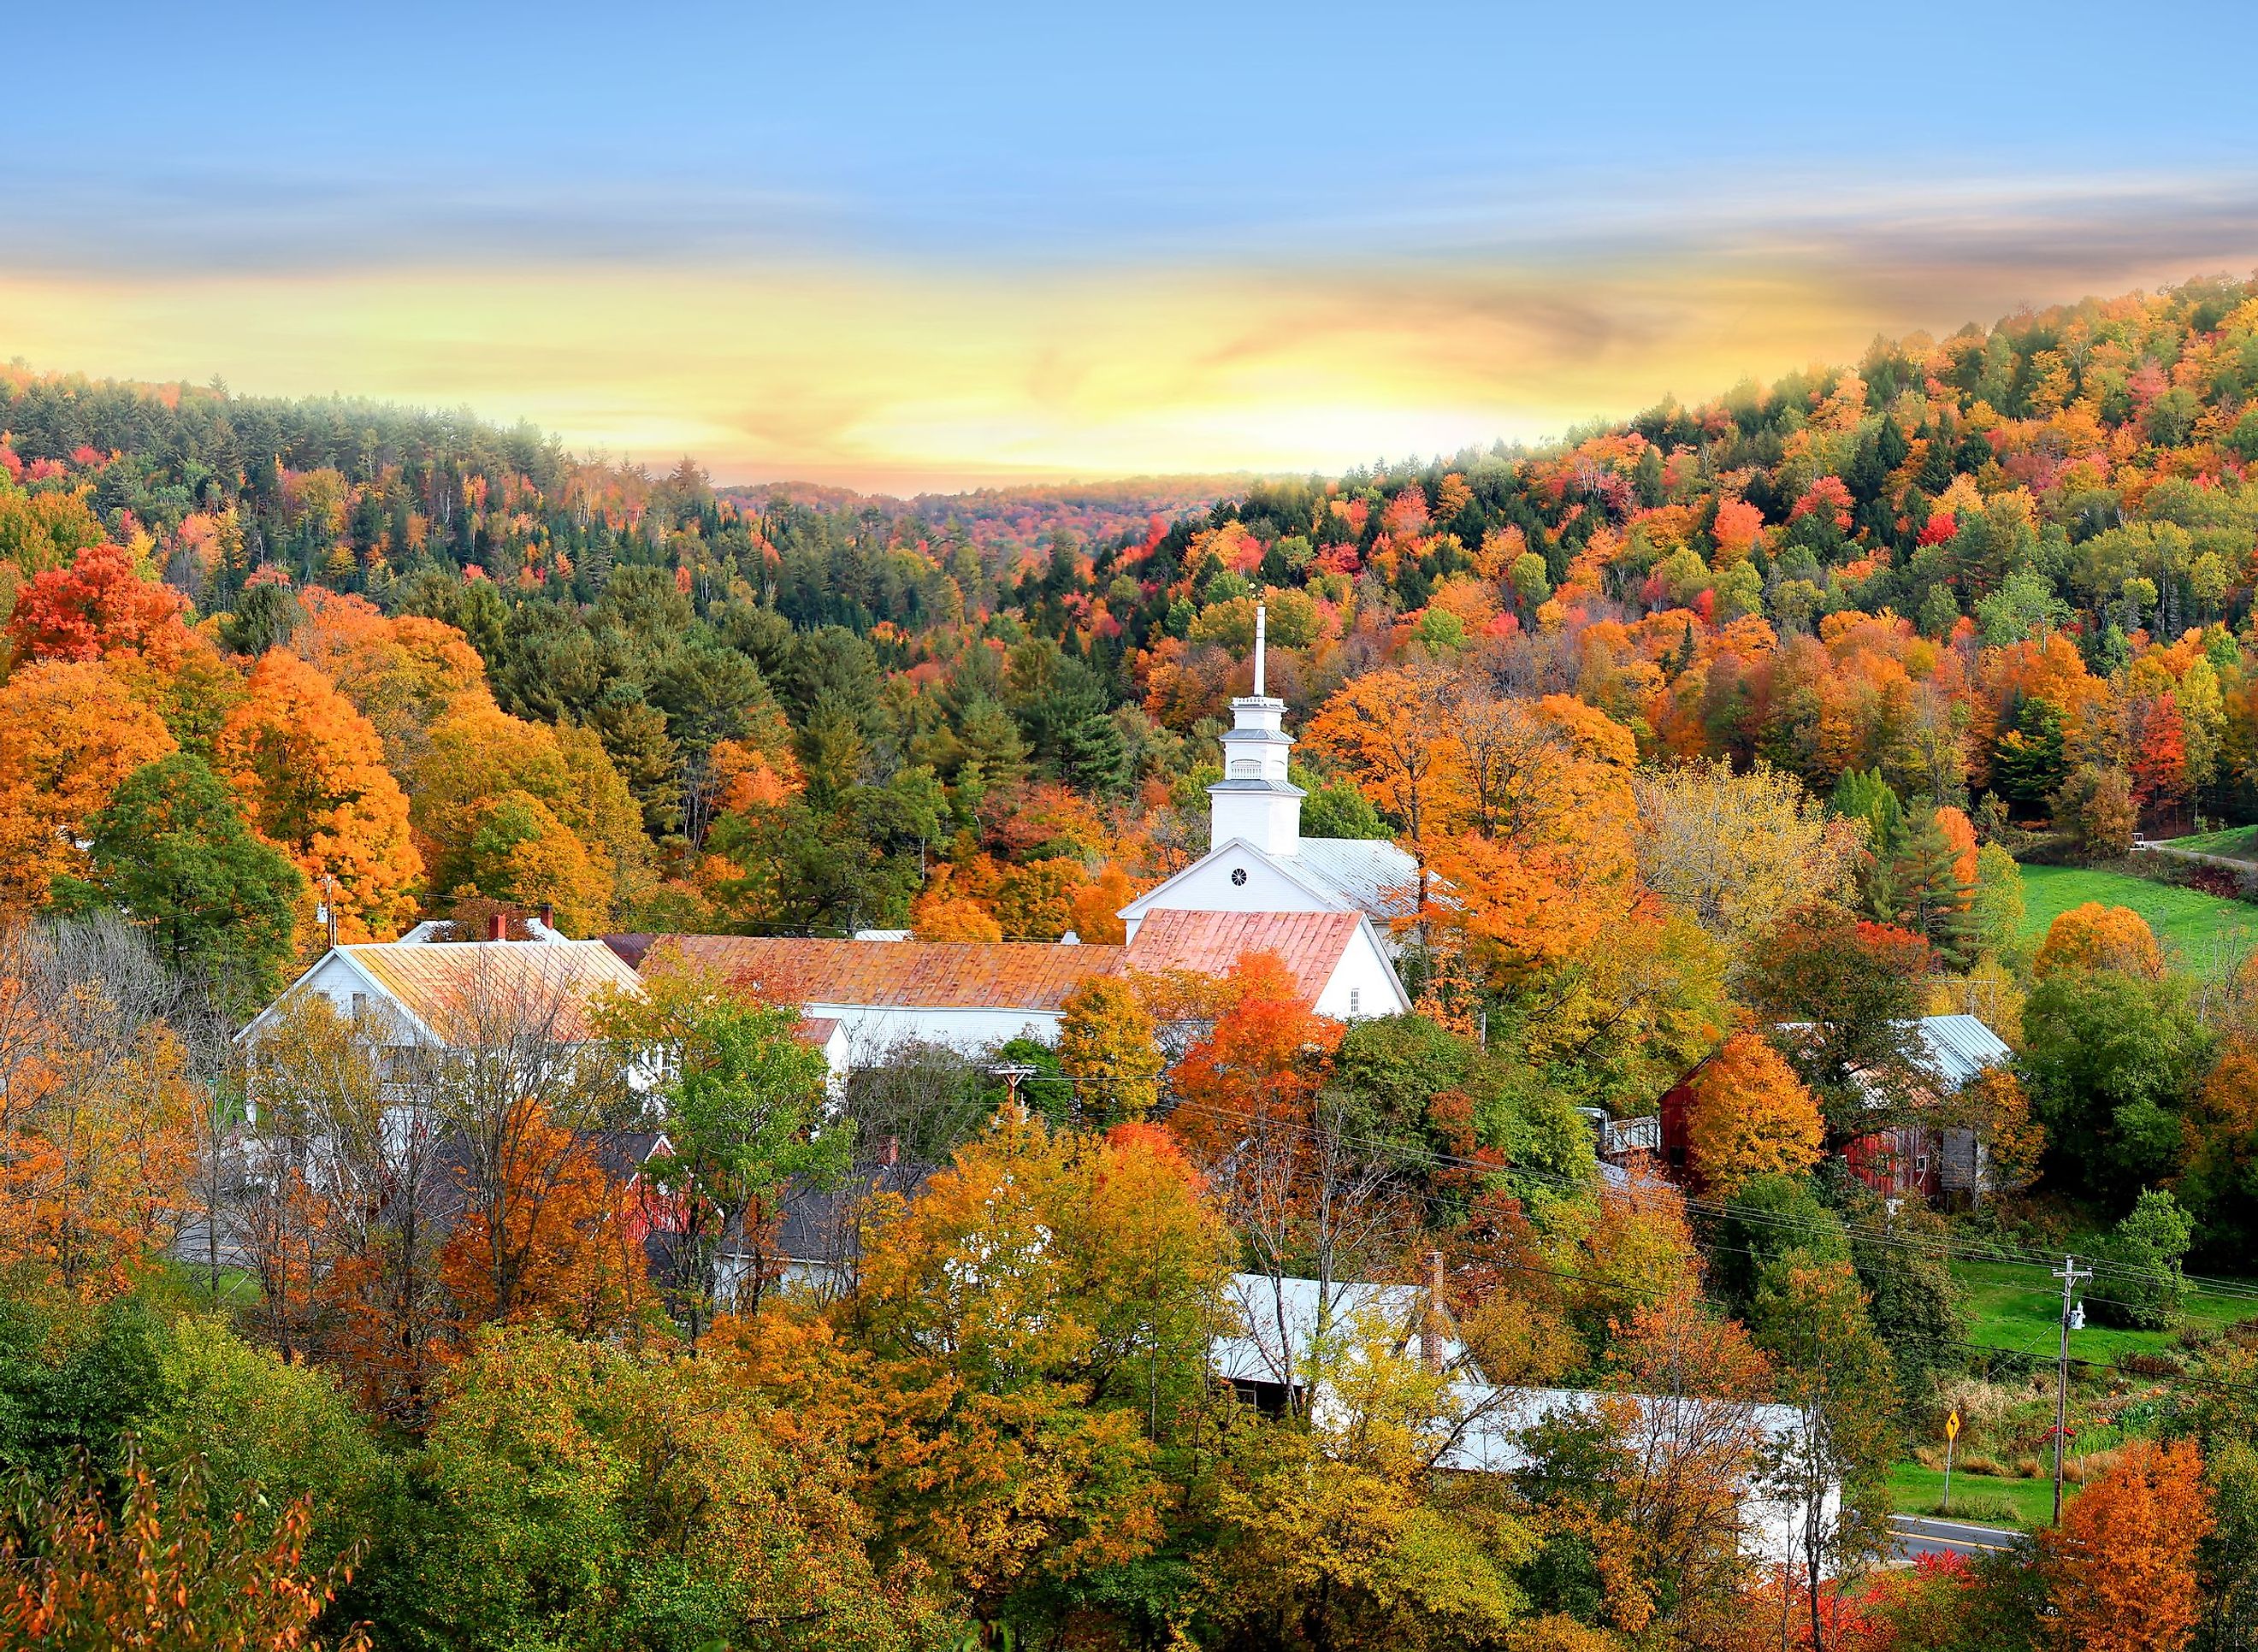 Topsham village, Vermont. Image credit SNEHIT PHOTO via shutterstock